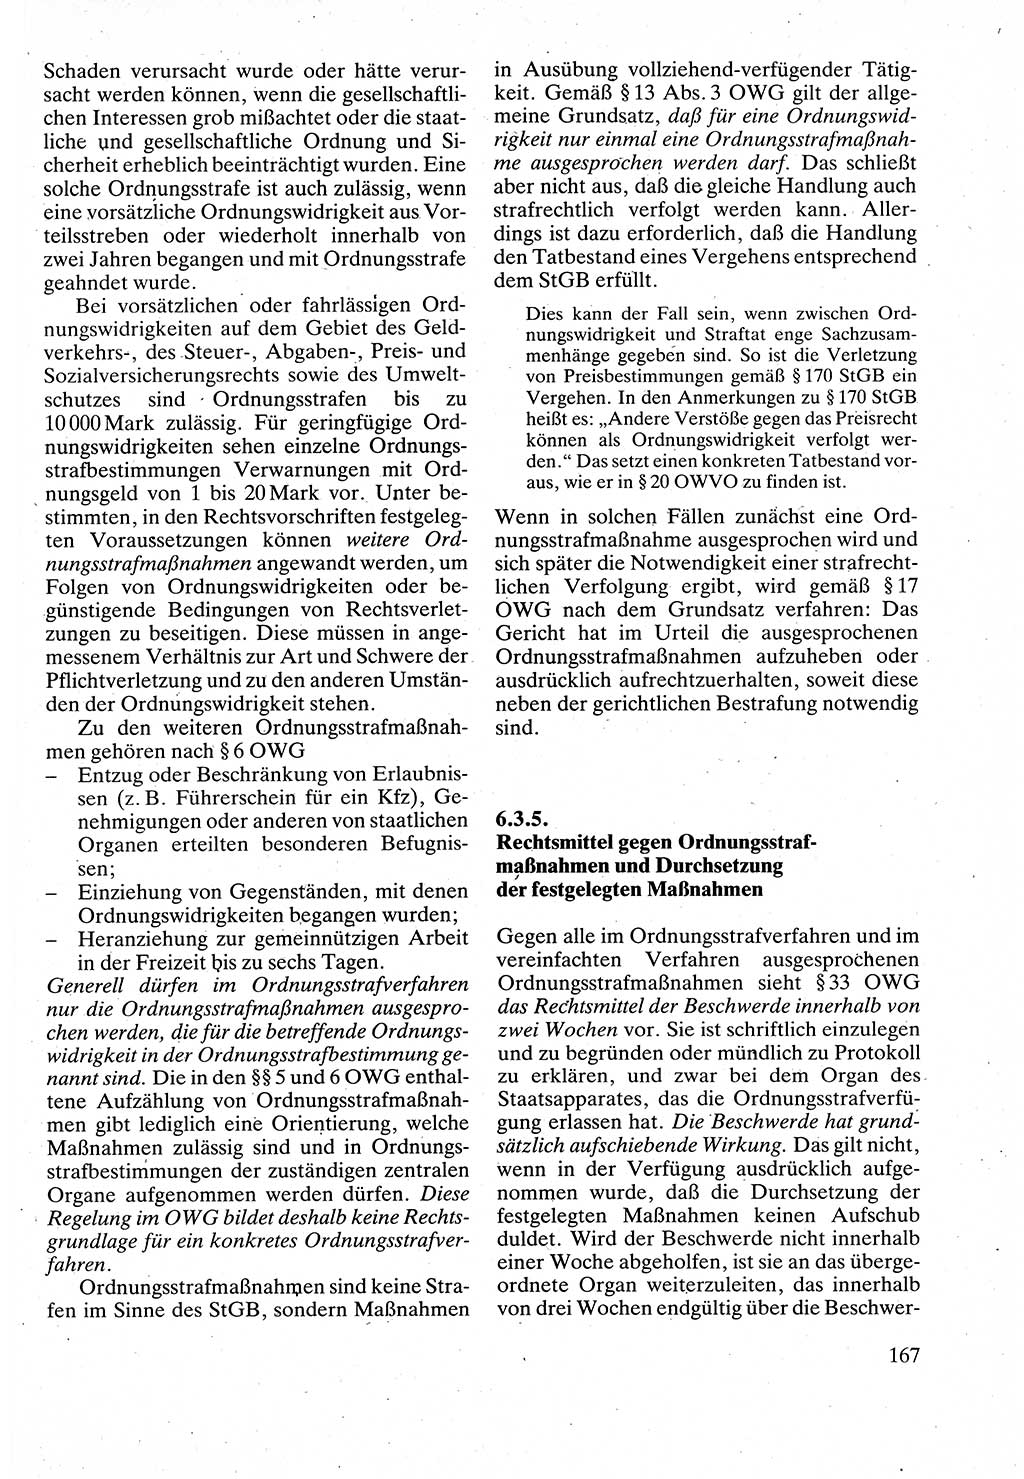 Verwaltungsrecht [Deutsche Demokratische Republik (DDR)], Lehrbuch 1988, Seite 167 (Verw.-R. DDR Lb. 1988, S. 167)